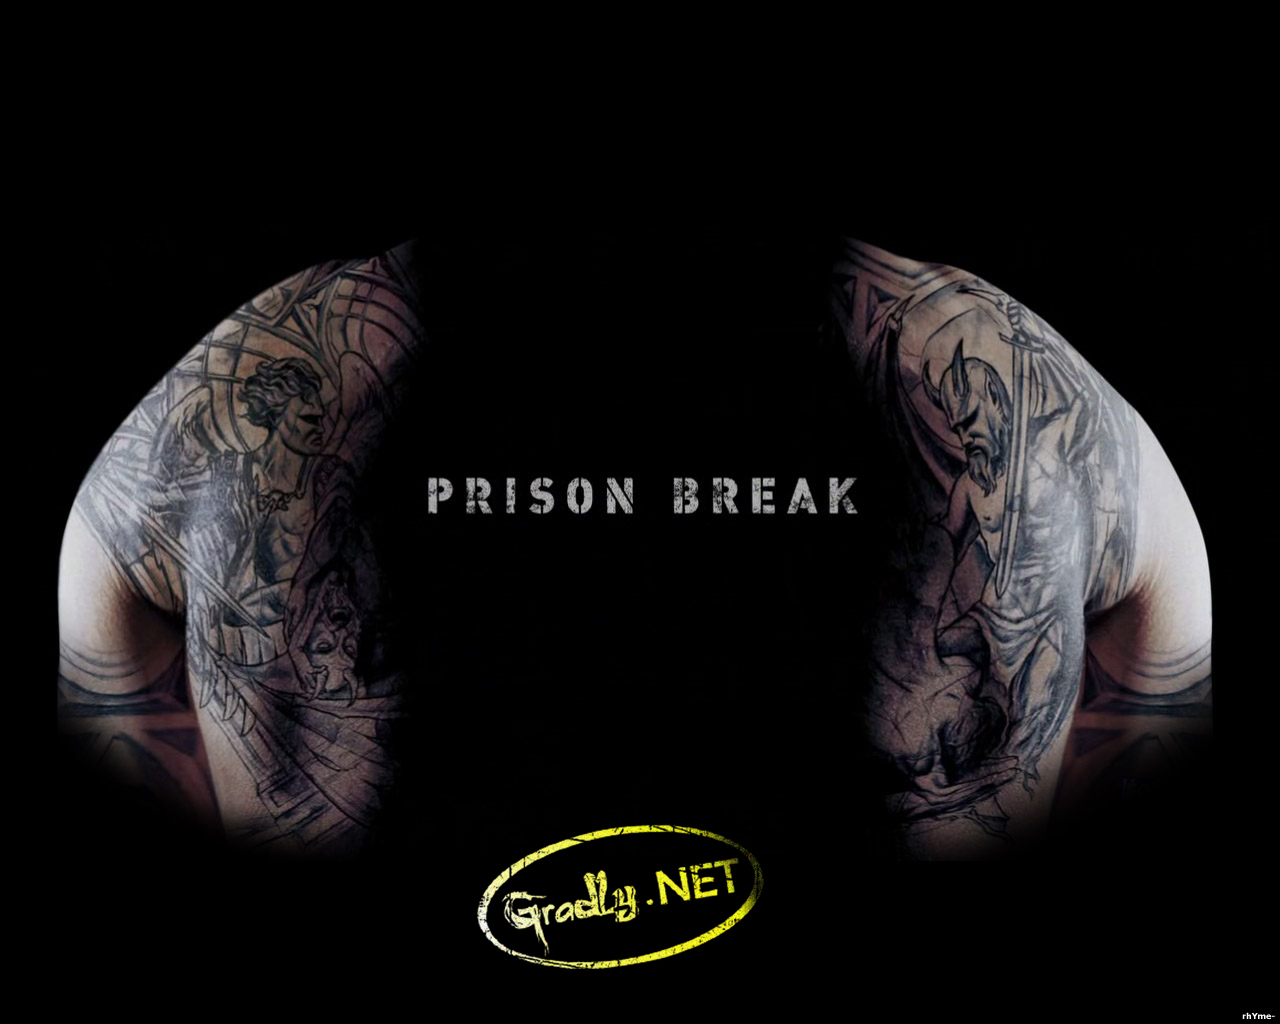 Free 3D Wallpapers Download: Prison break wallpapers, prison break ...